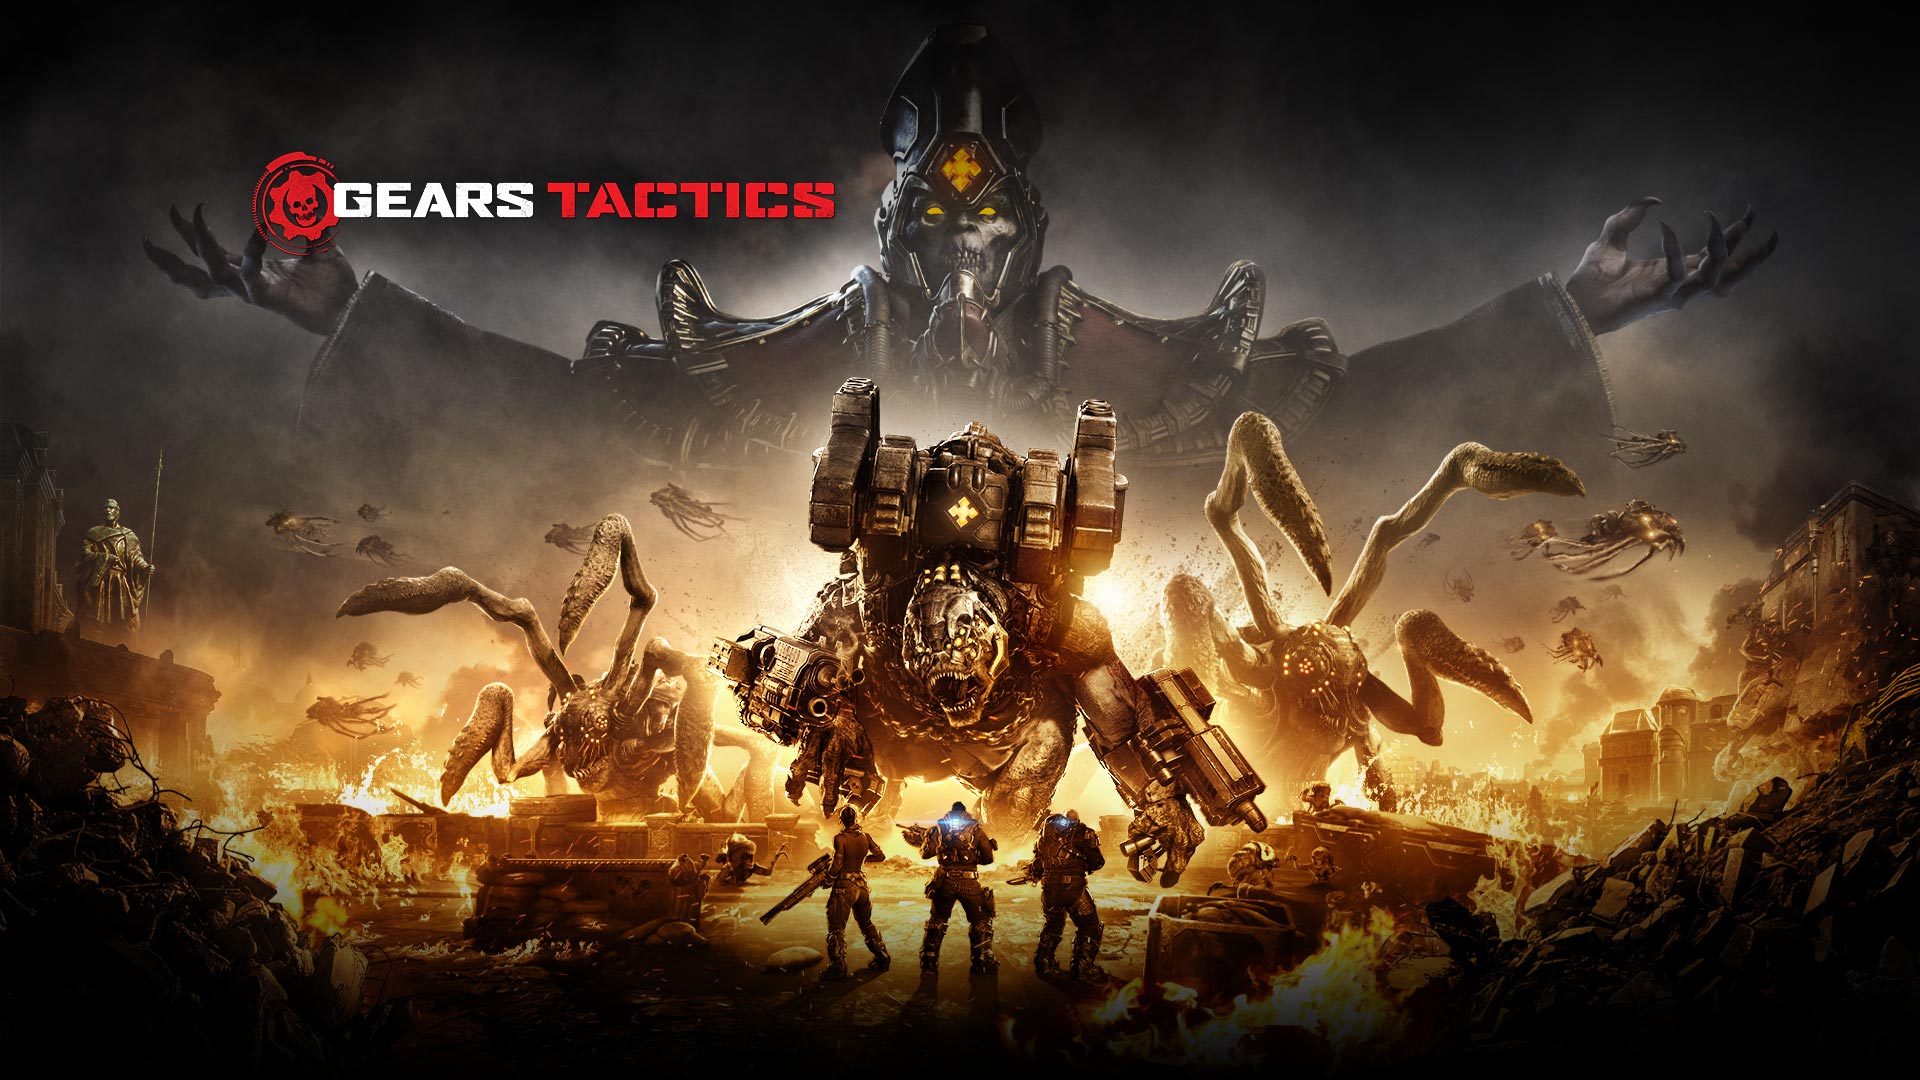 Λογότυπο Gears Tactics, σκηνή με τρεις χαρακτήρες που πρόκειται να πολεμήσουν διάφορα μεγάλα τέρατα ενώ η περιοχή γύρω τους καίγεται